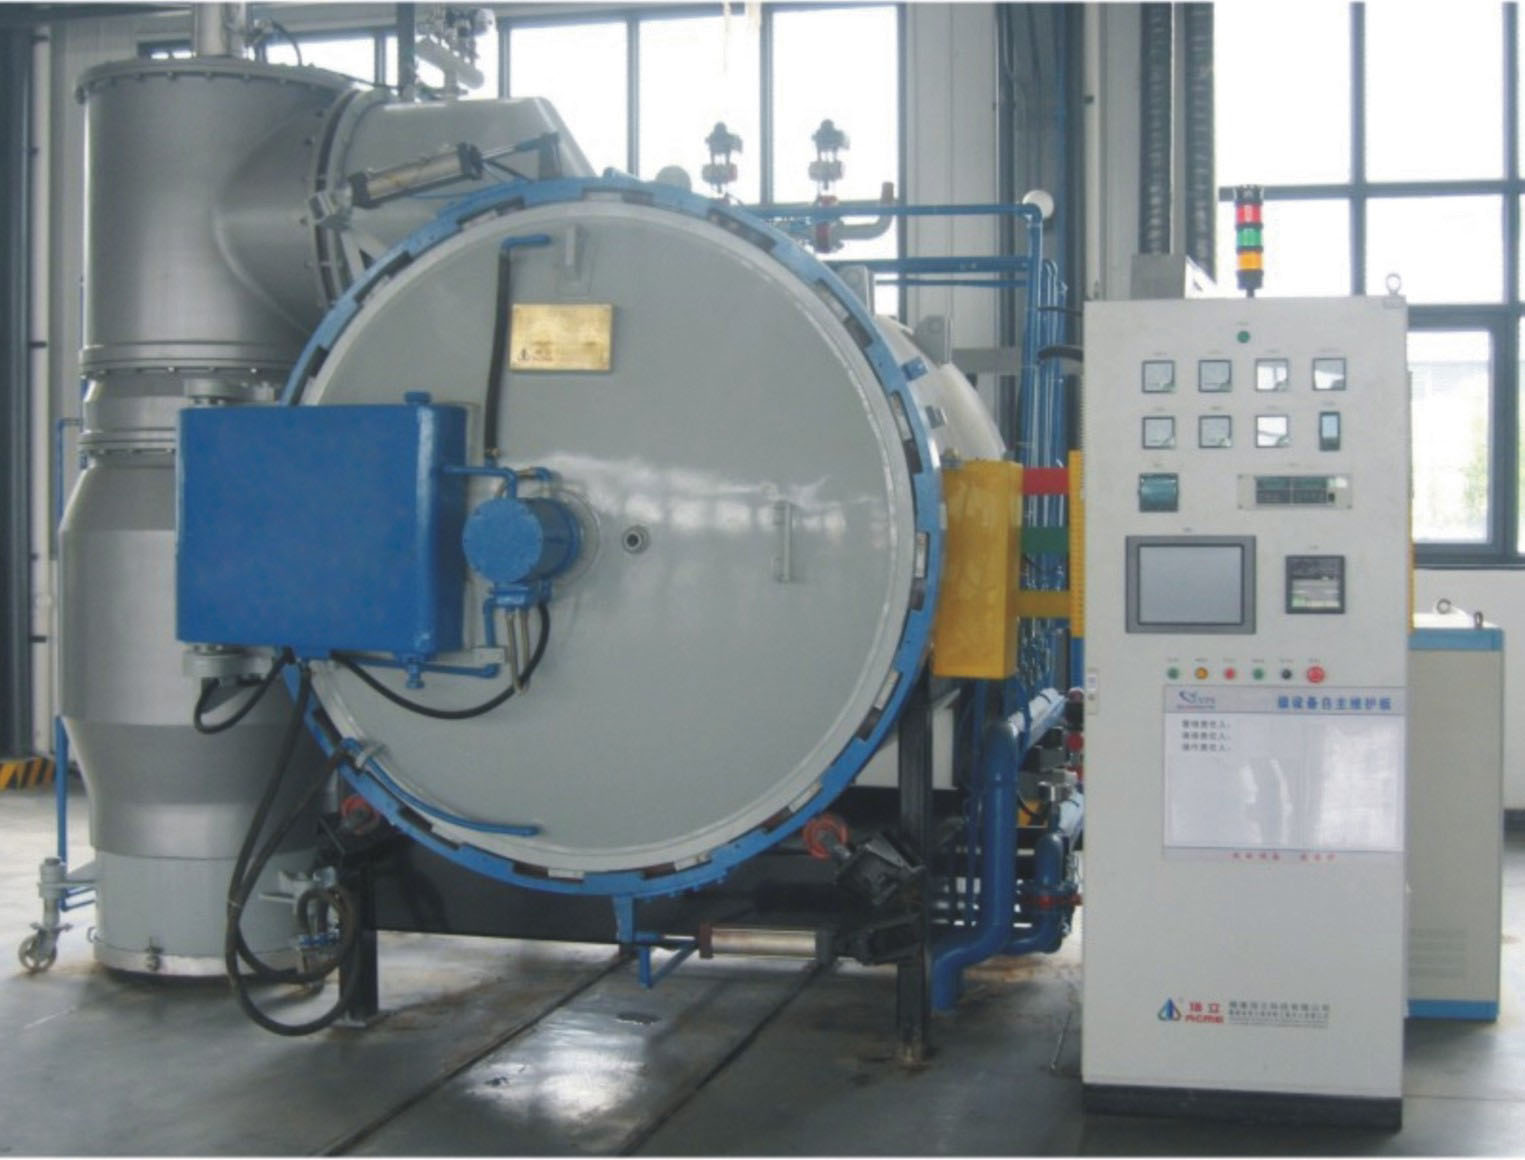 China Vacuum Sinter Furnace Manufacture